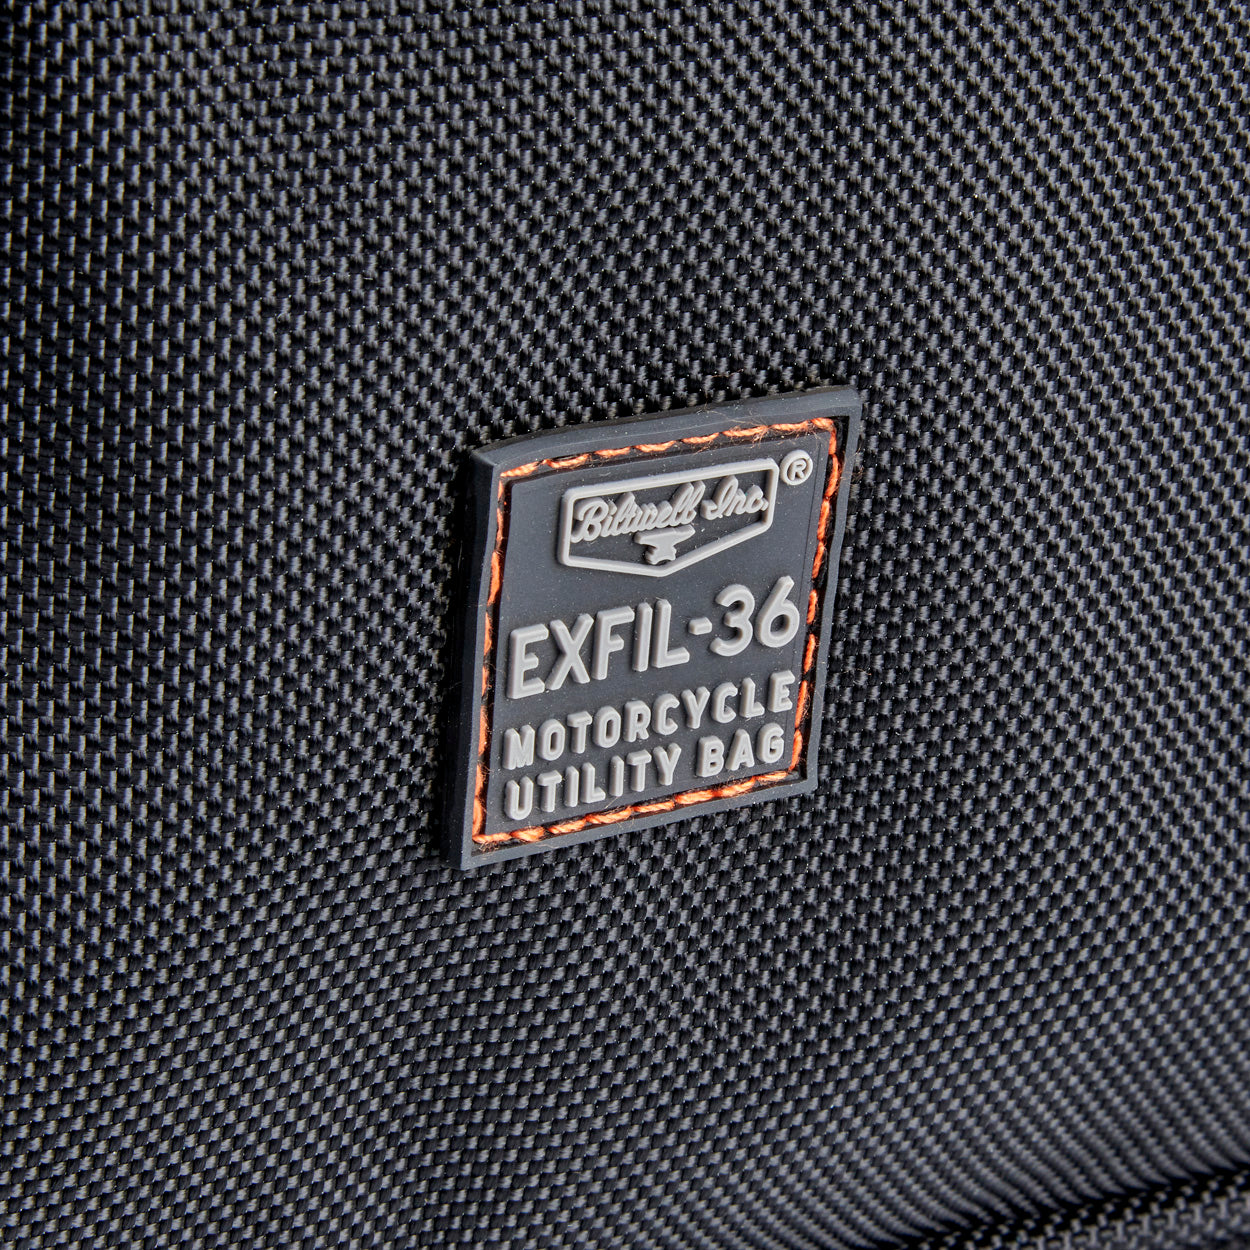 EXFIL-36 Saddlebags Black